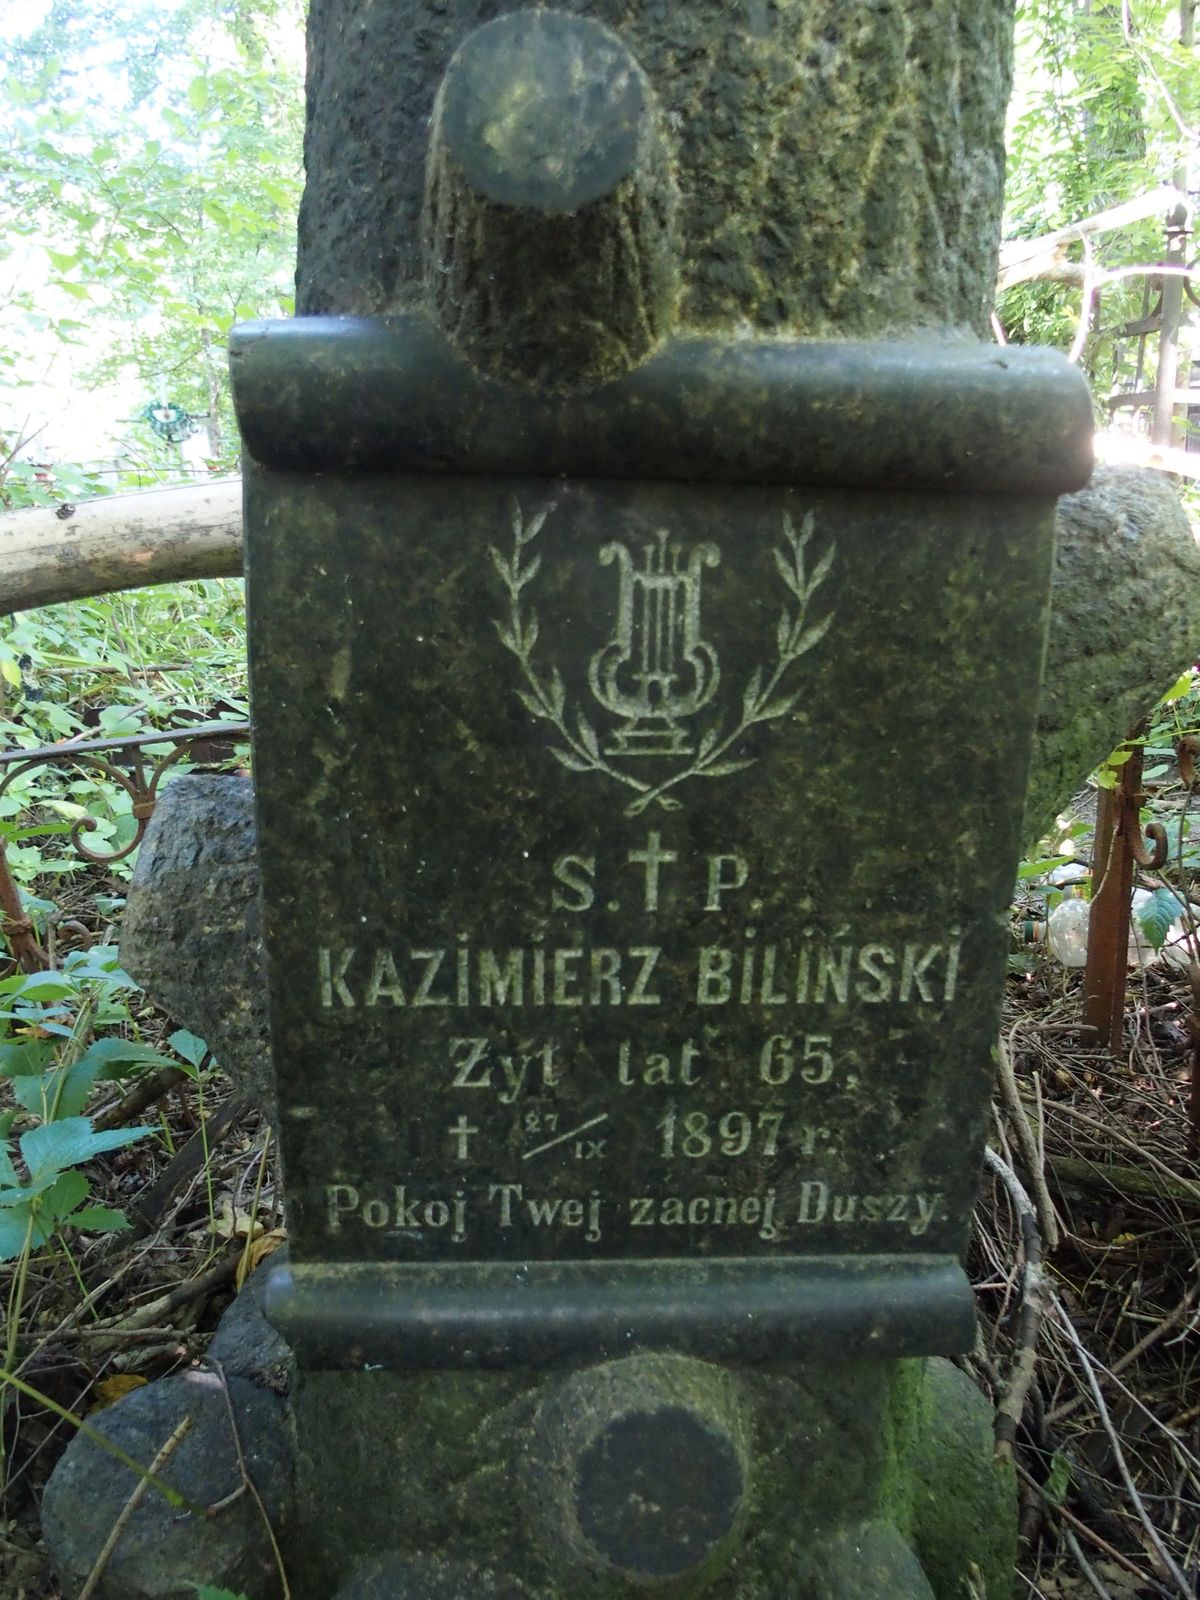 Inscription from the tombstone of Kazimierz Bilinski